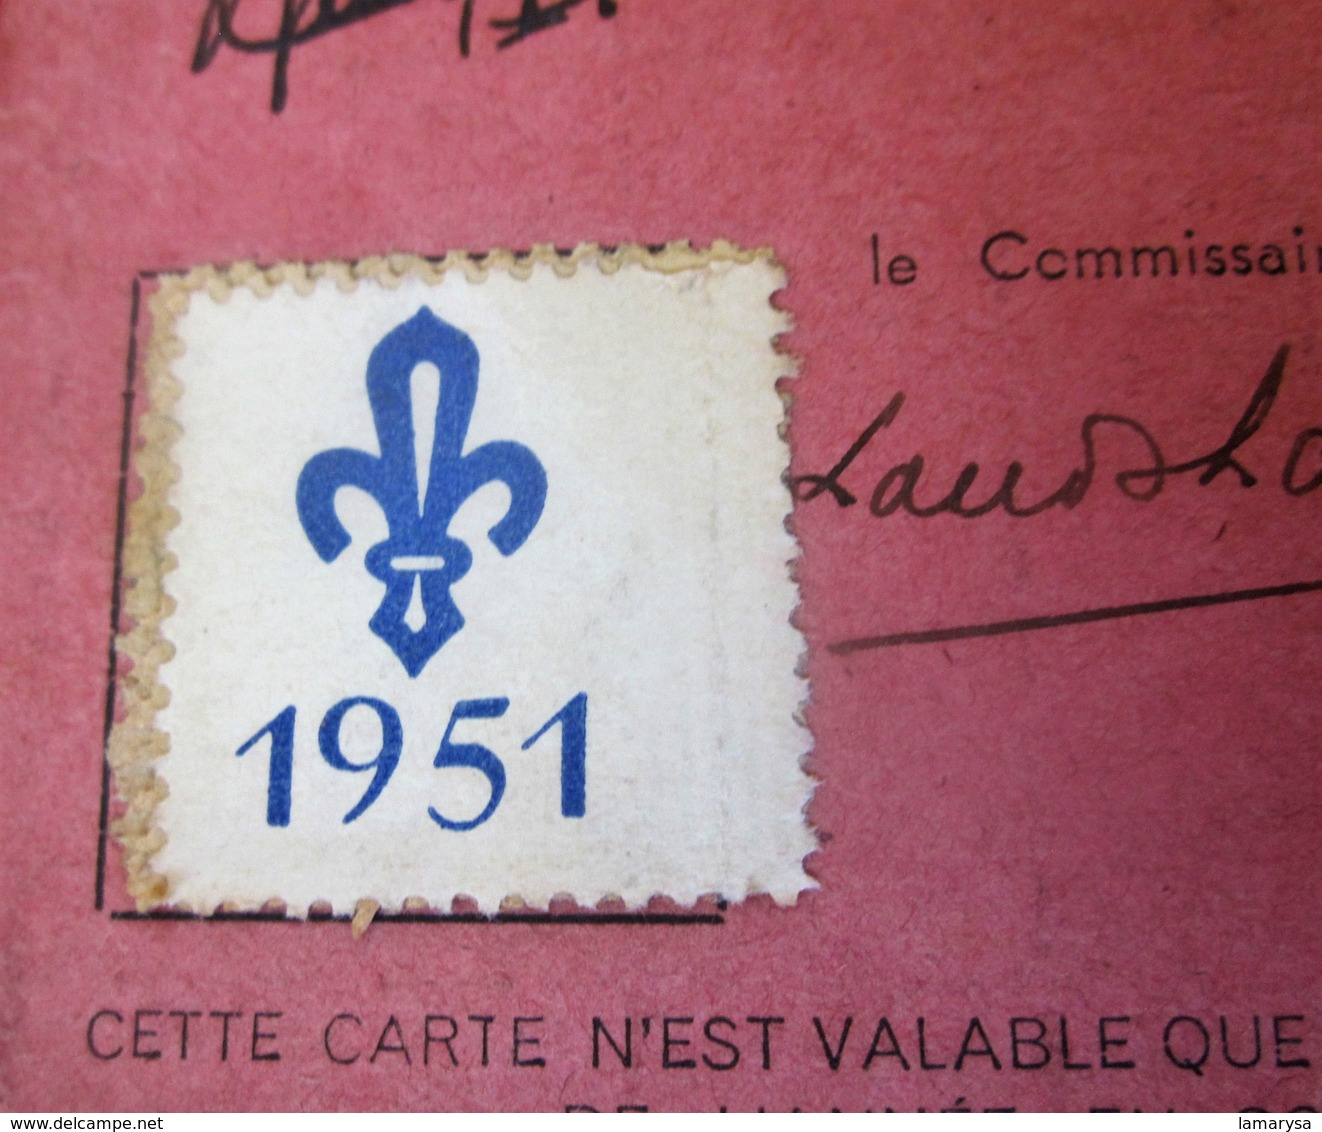 1951-BERRY BOURBONNAIS CHÂTEAUROUX CARTE DE ROUTIER SCOUT DE FRANCE SCOUTISME FRANÇAIS JAMBOREE  Né à TOURS 1932 - Scoutisme